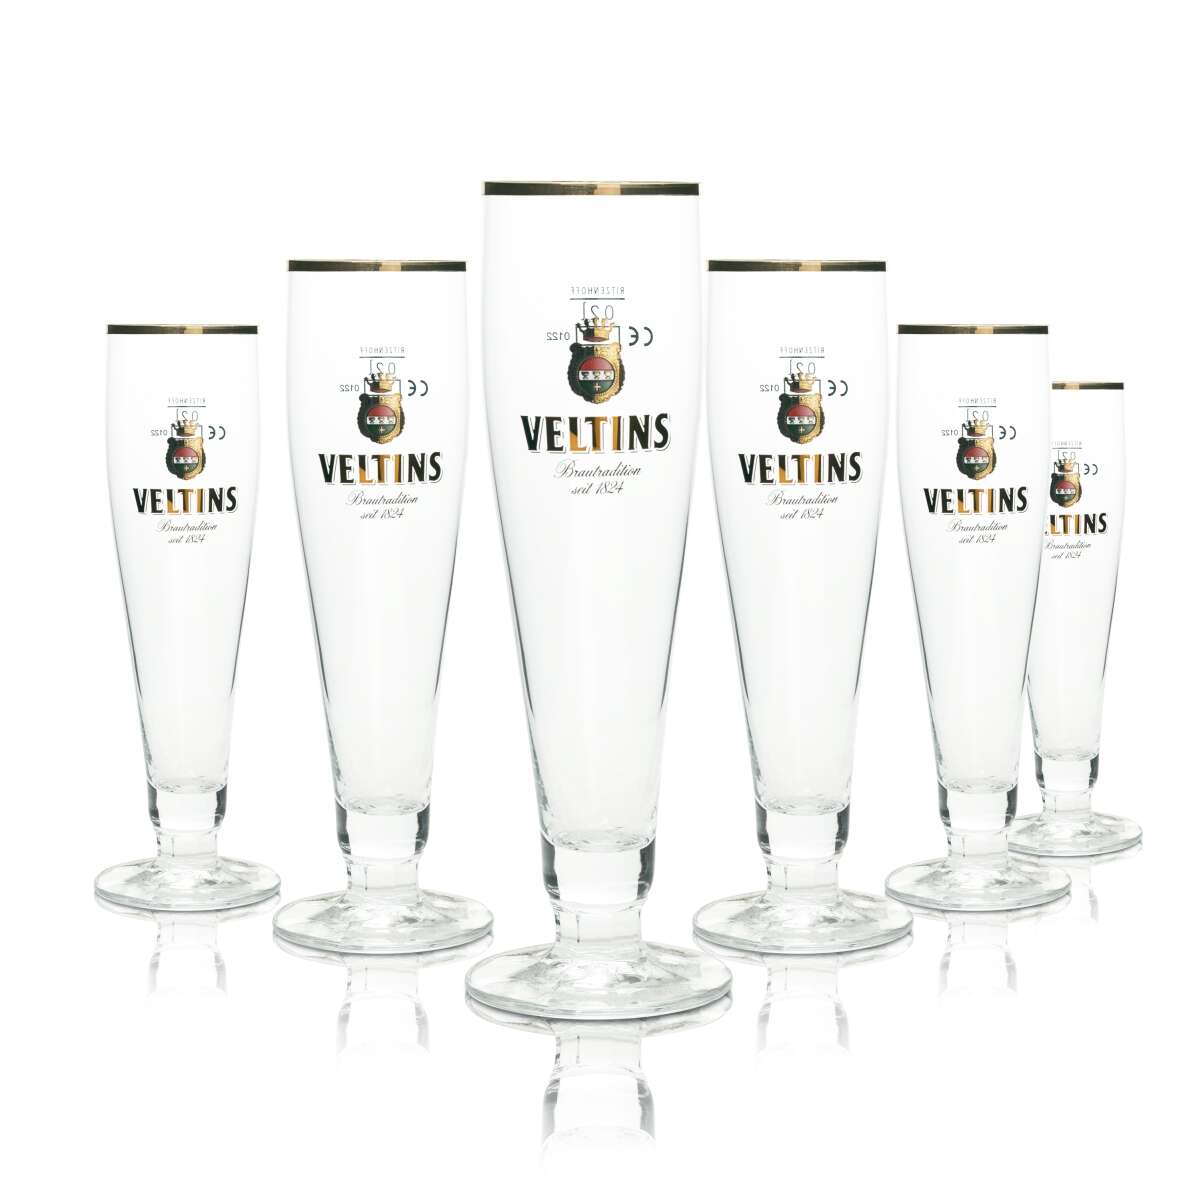 6x Dithmarscher Bier Glas 0,25l Pokal Pils Ritzenhoff Tulpen Gläser Export Pils 